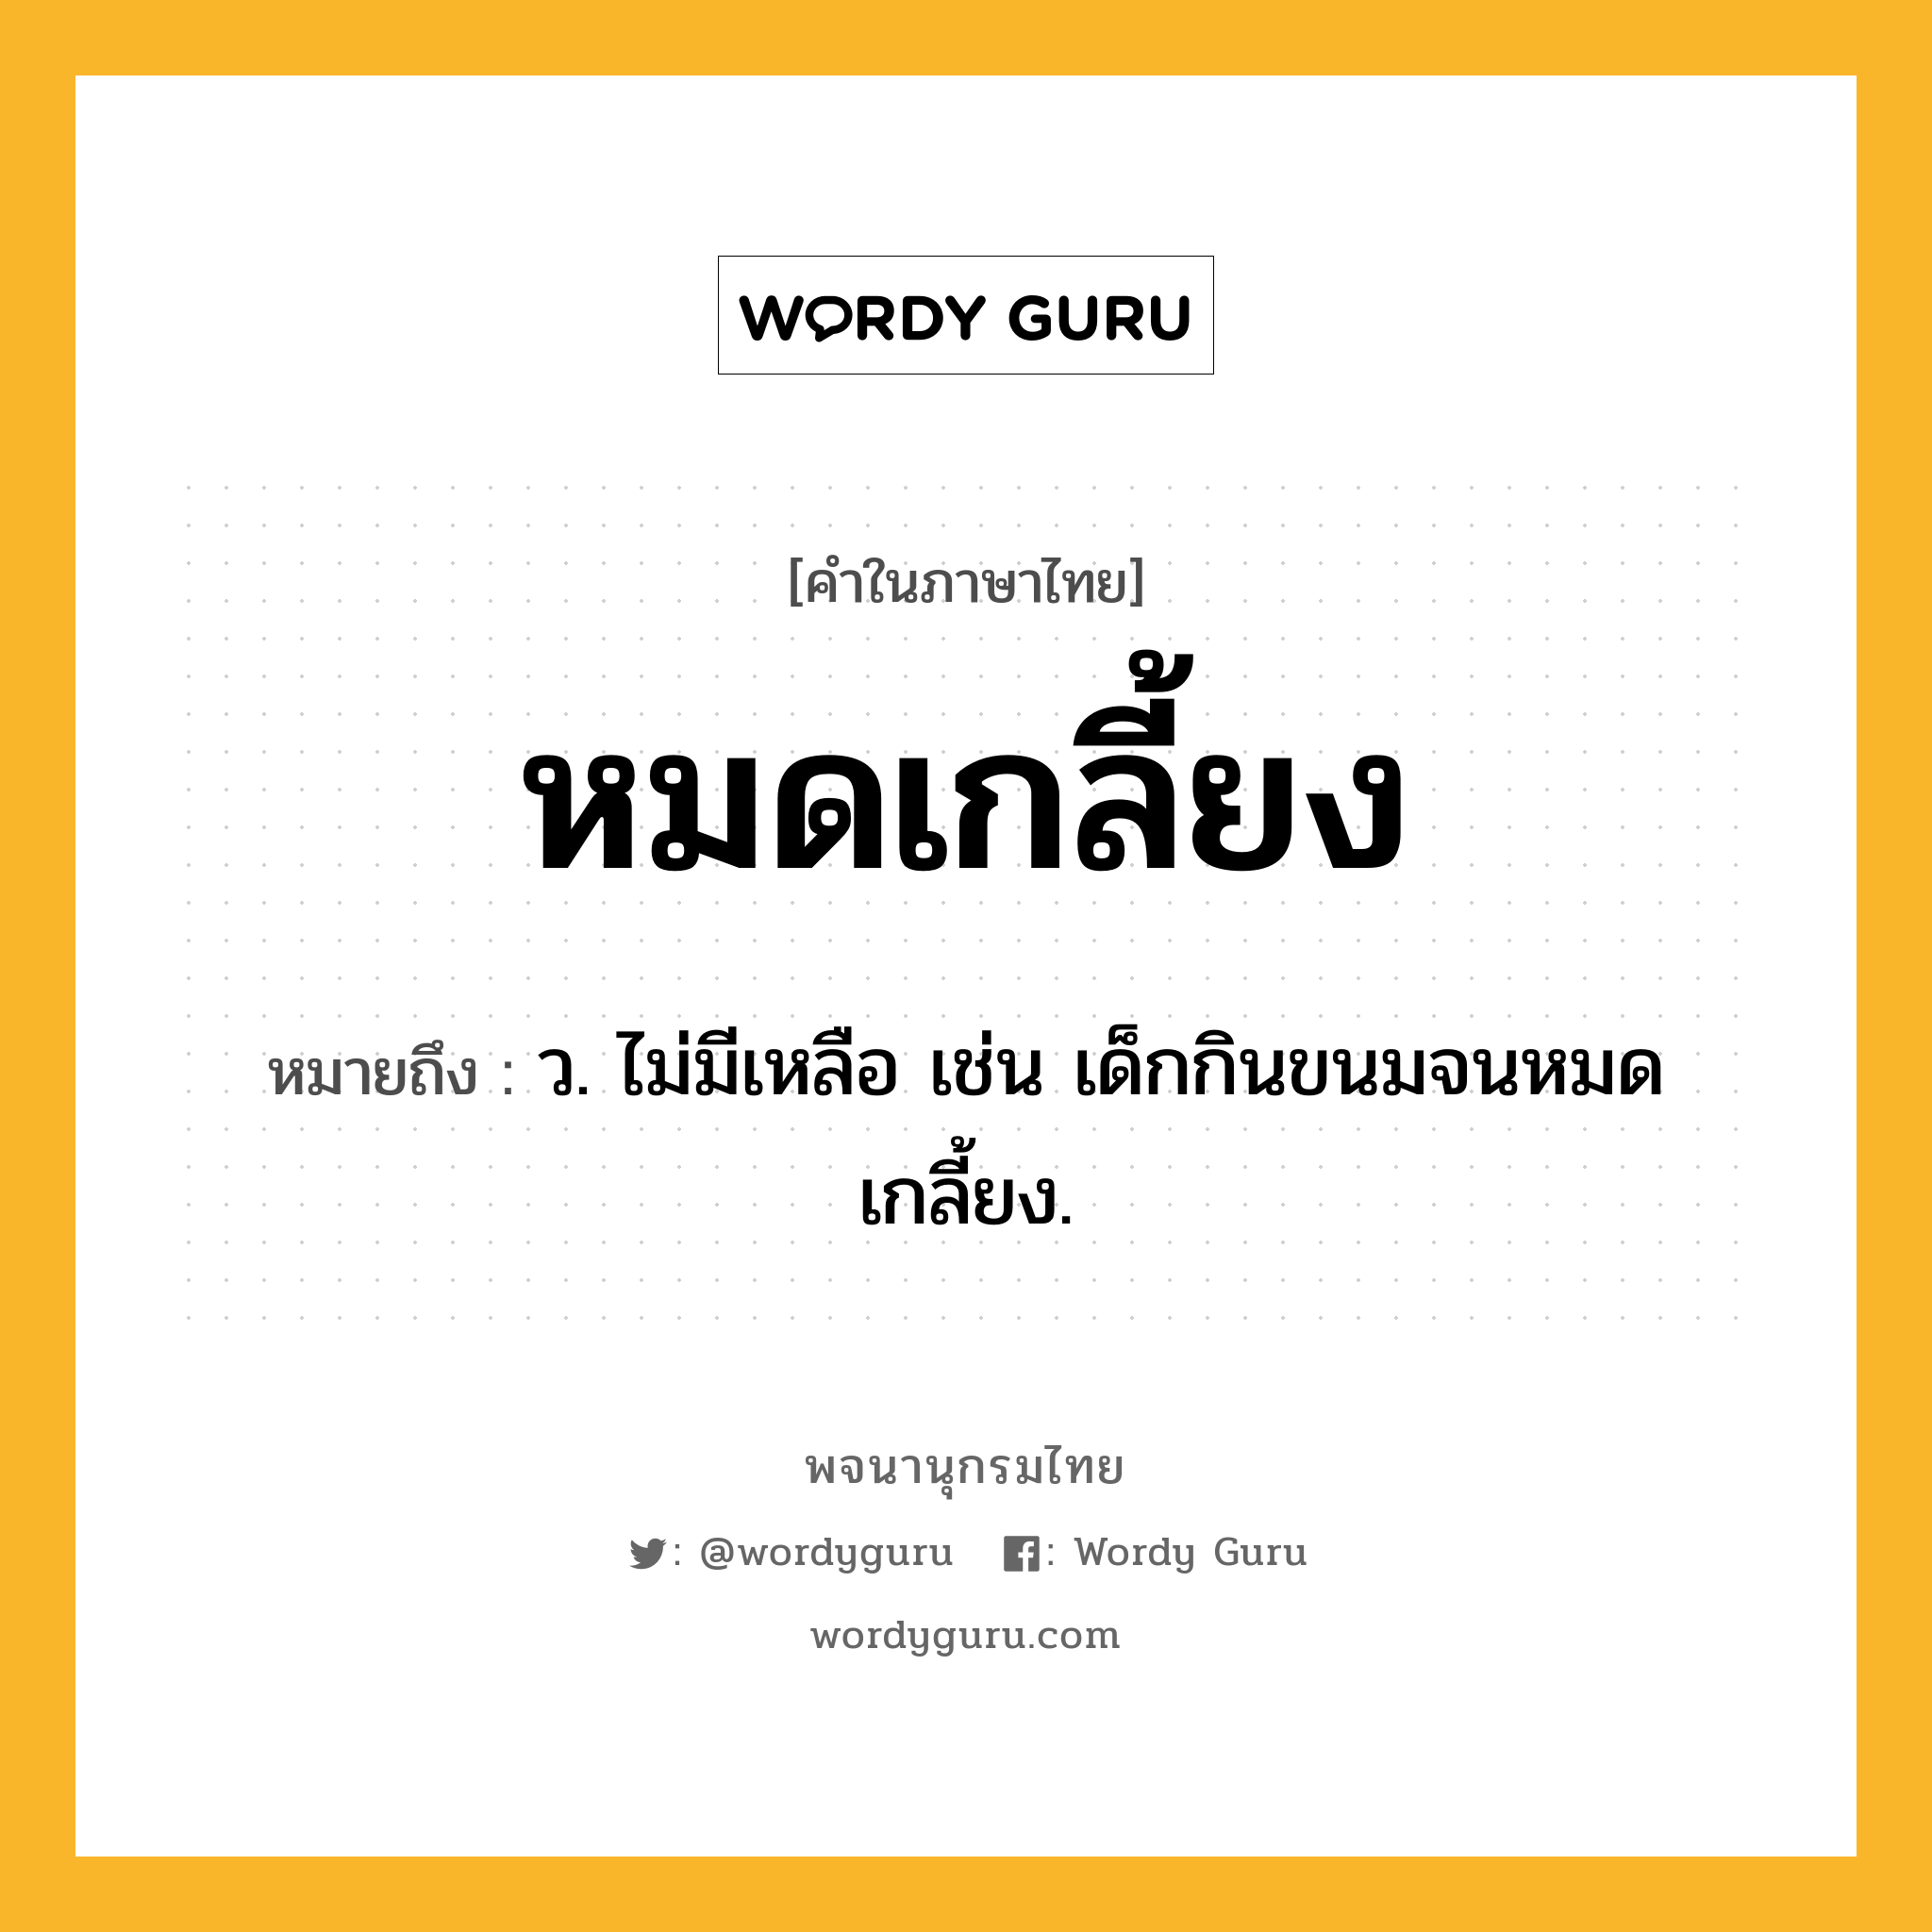 หมดเกลี้ยง ความหมาย หมายถึงอะไร?, คำในภาษาไทย หมดเกลี้ยง หมายถึง ว. ไม่มีเหลือ เช่น เด็กกินขนมจนหมดเกลี้ยง.